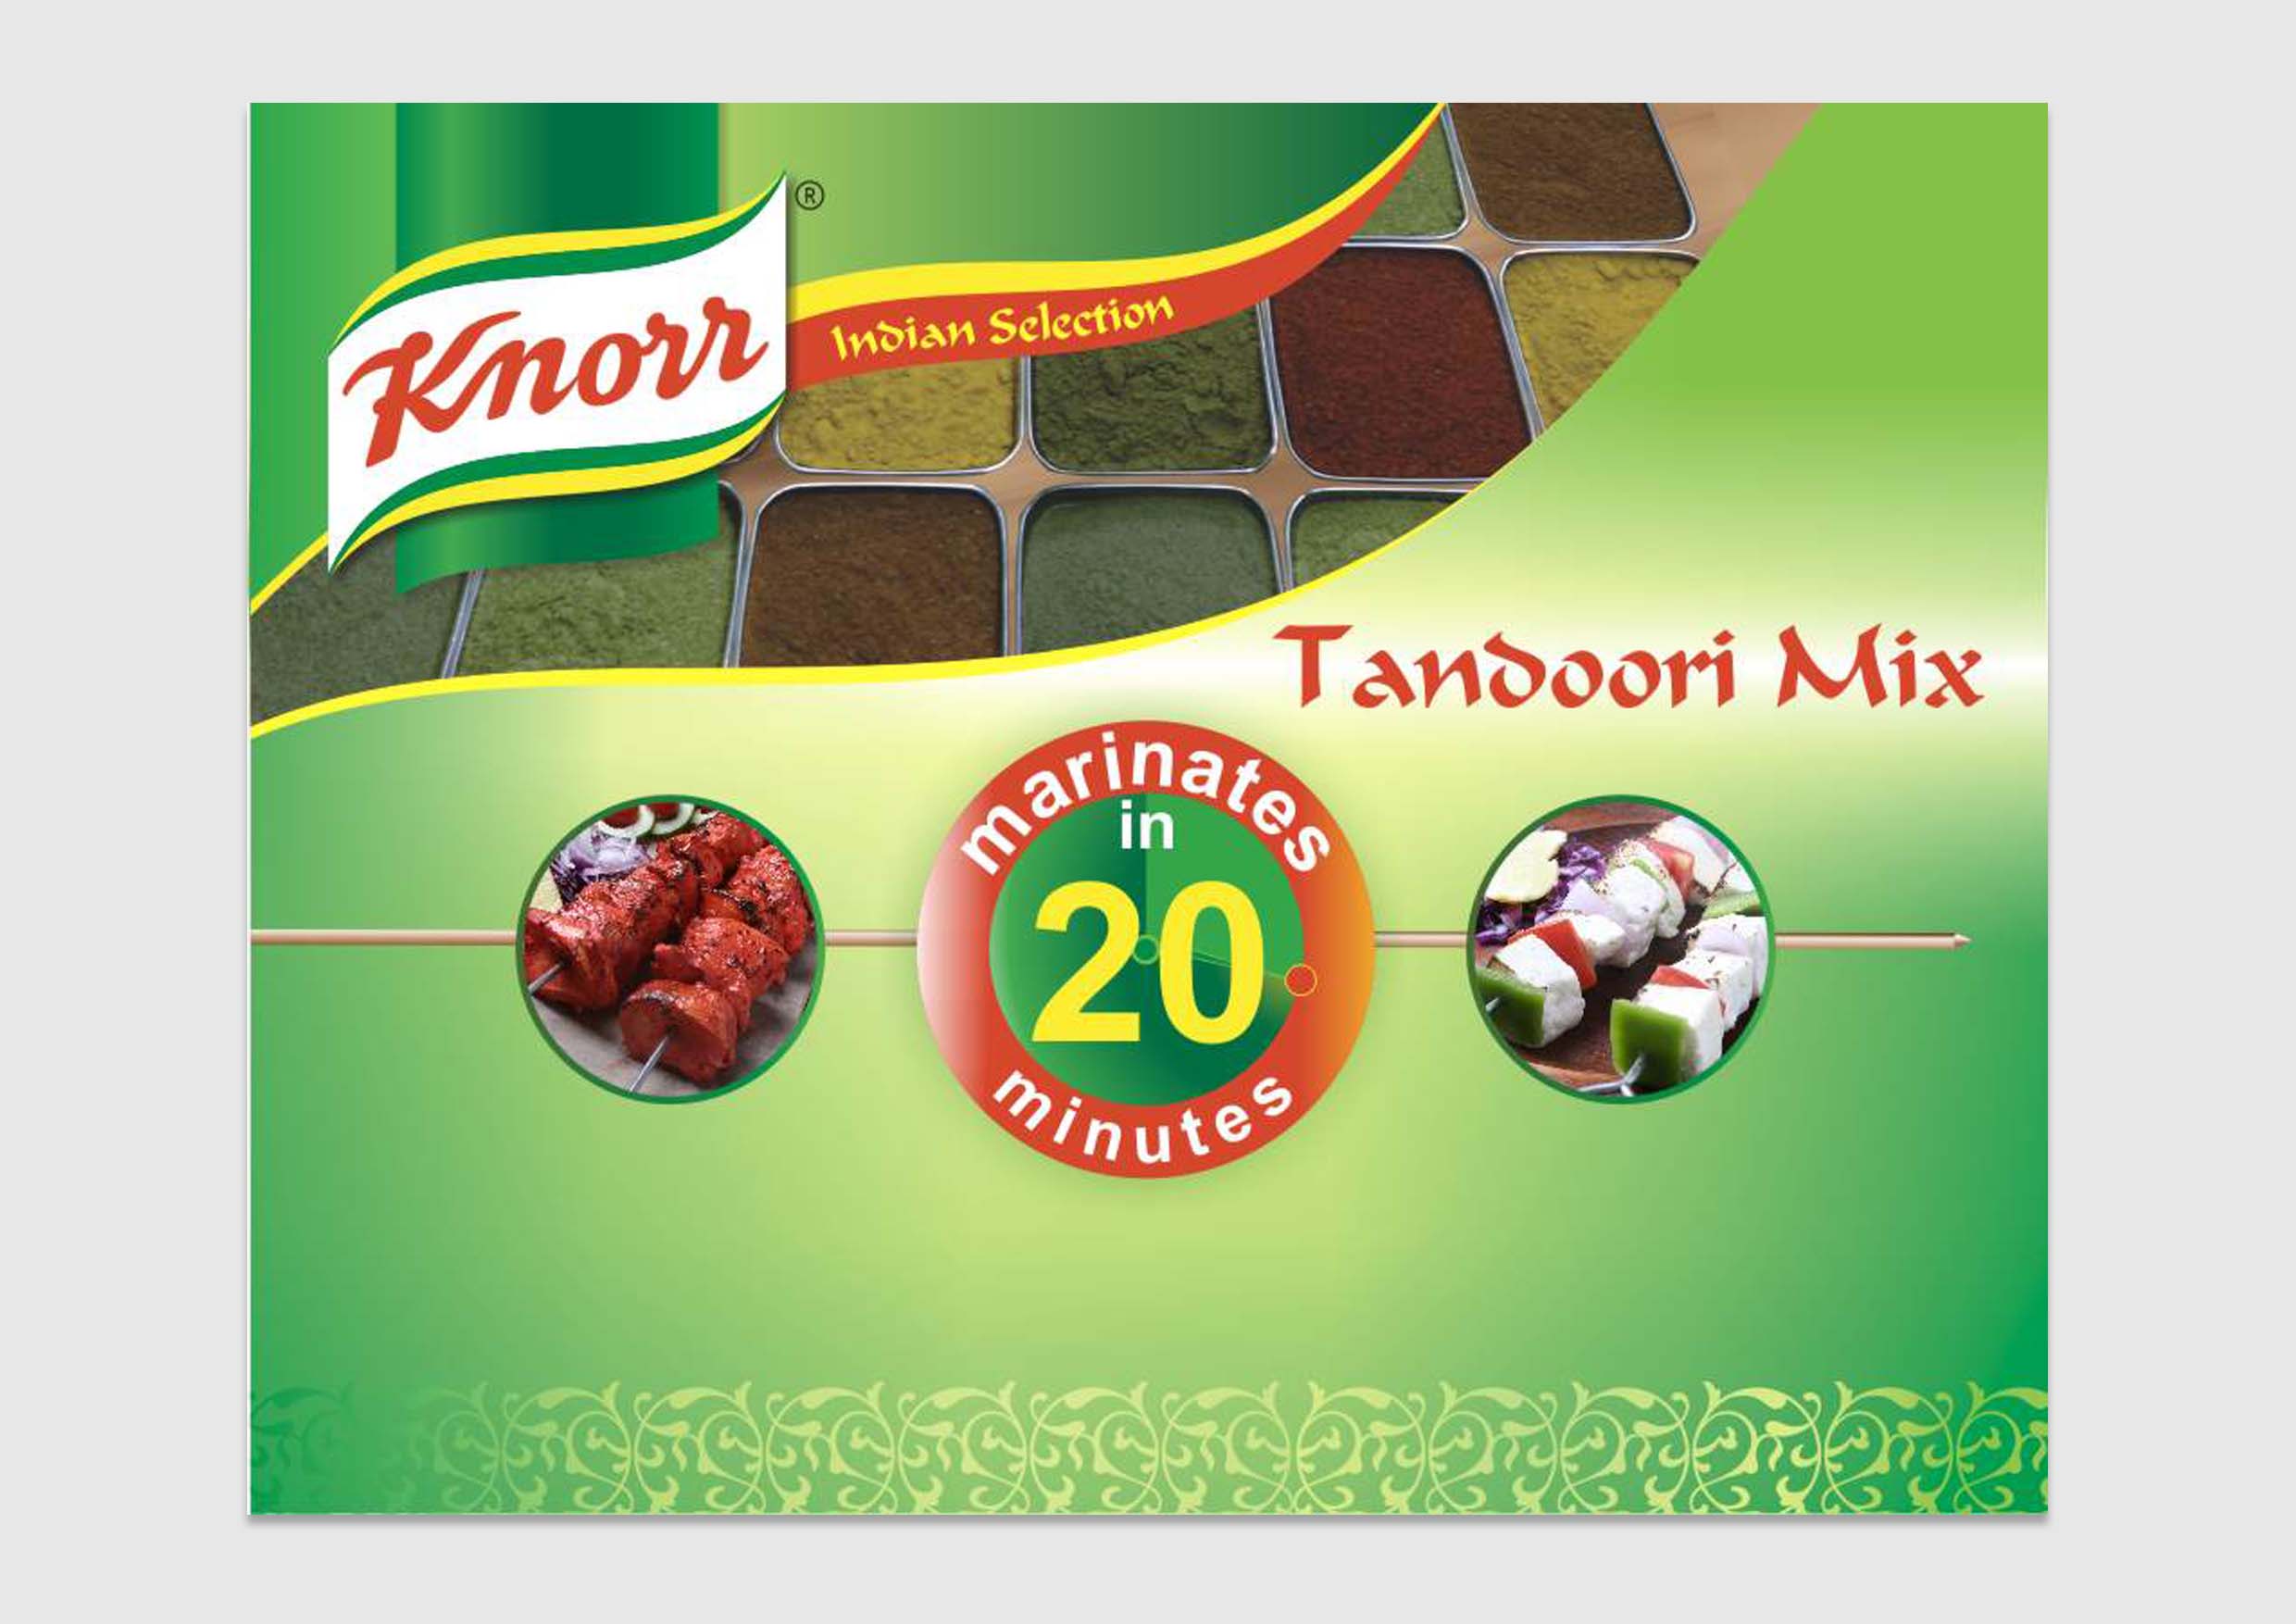 knorr tandoori mix